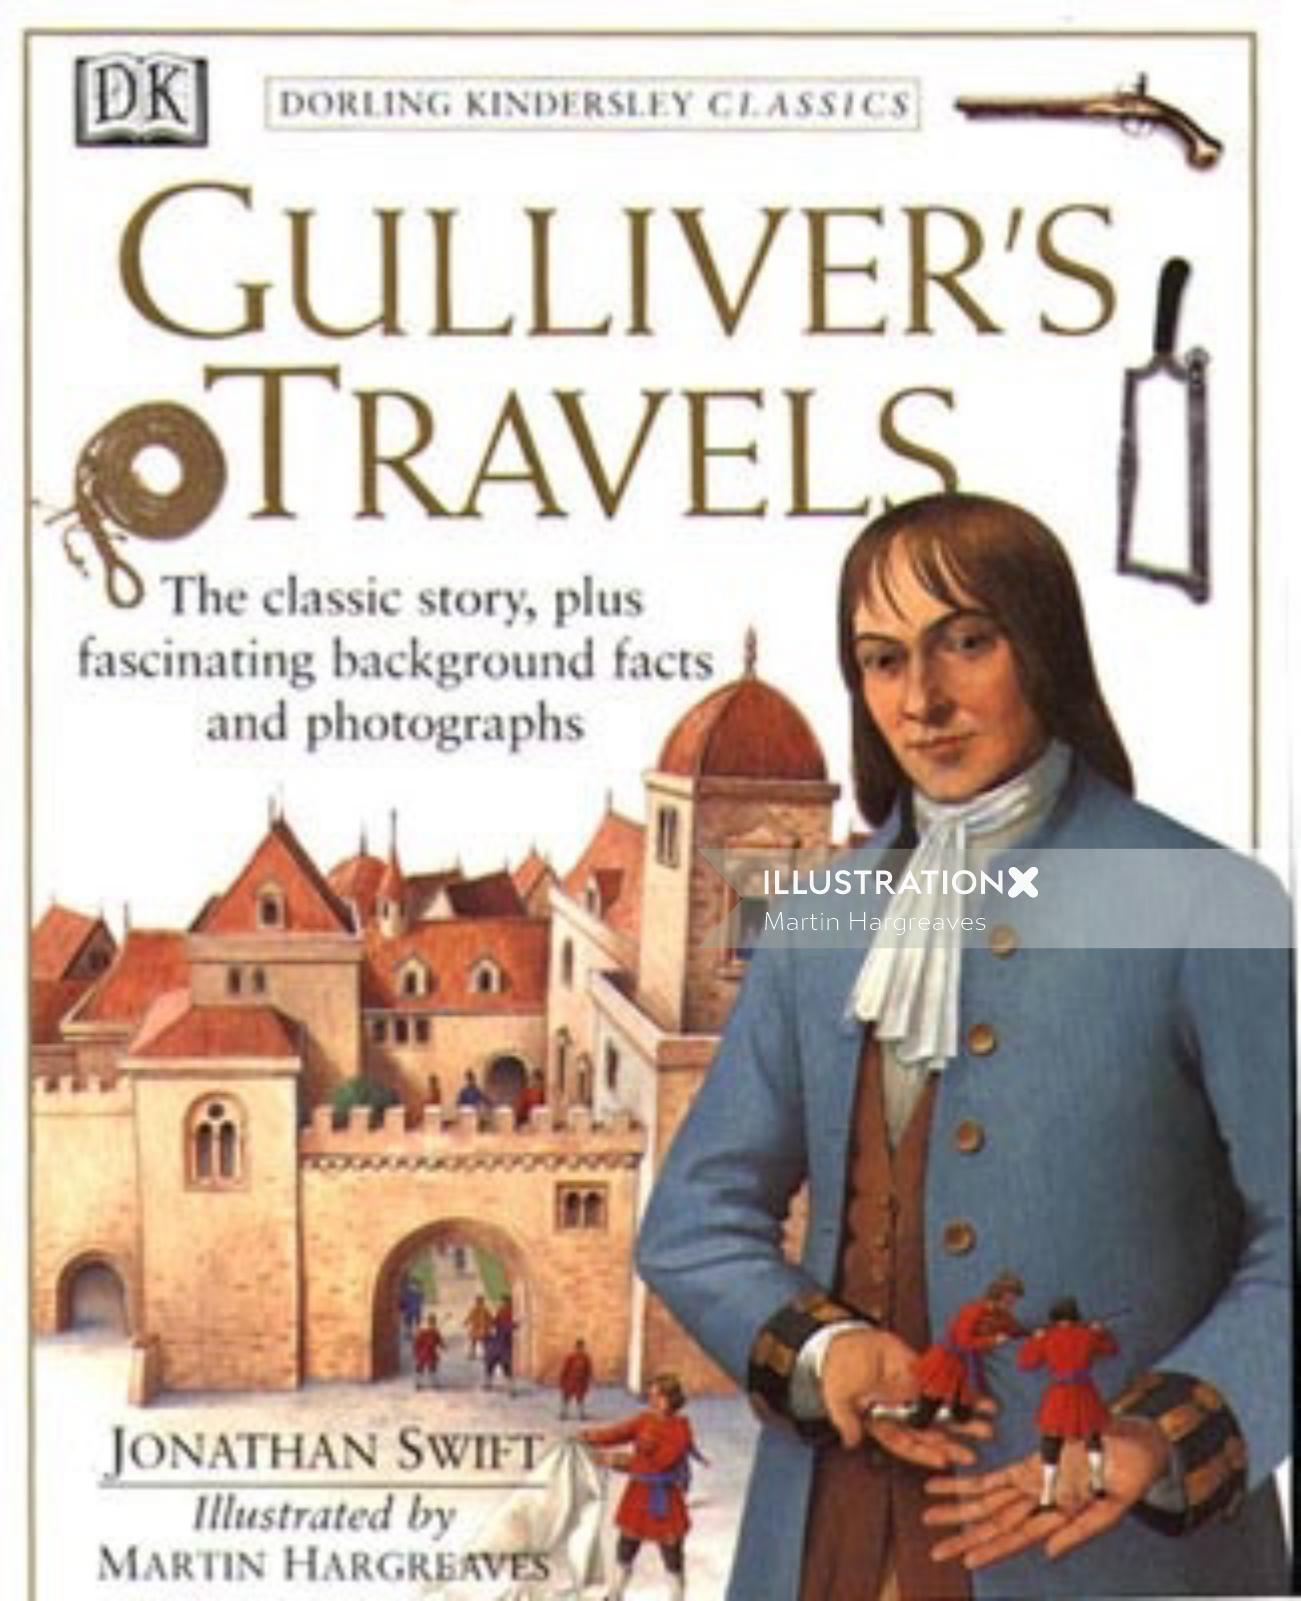 Illustration de la page de couverture des voyages de Gulliver